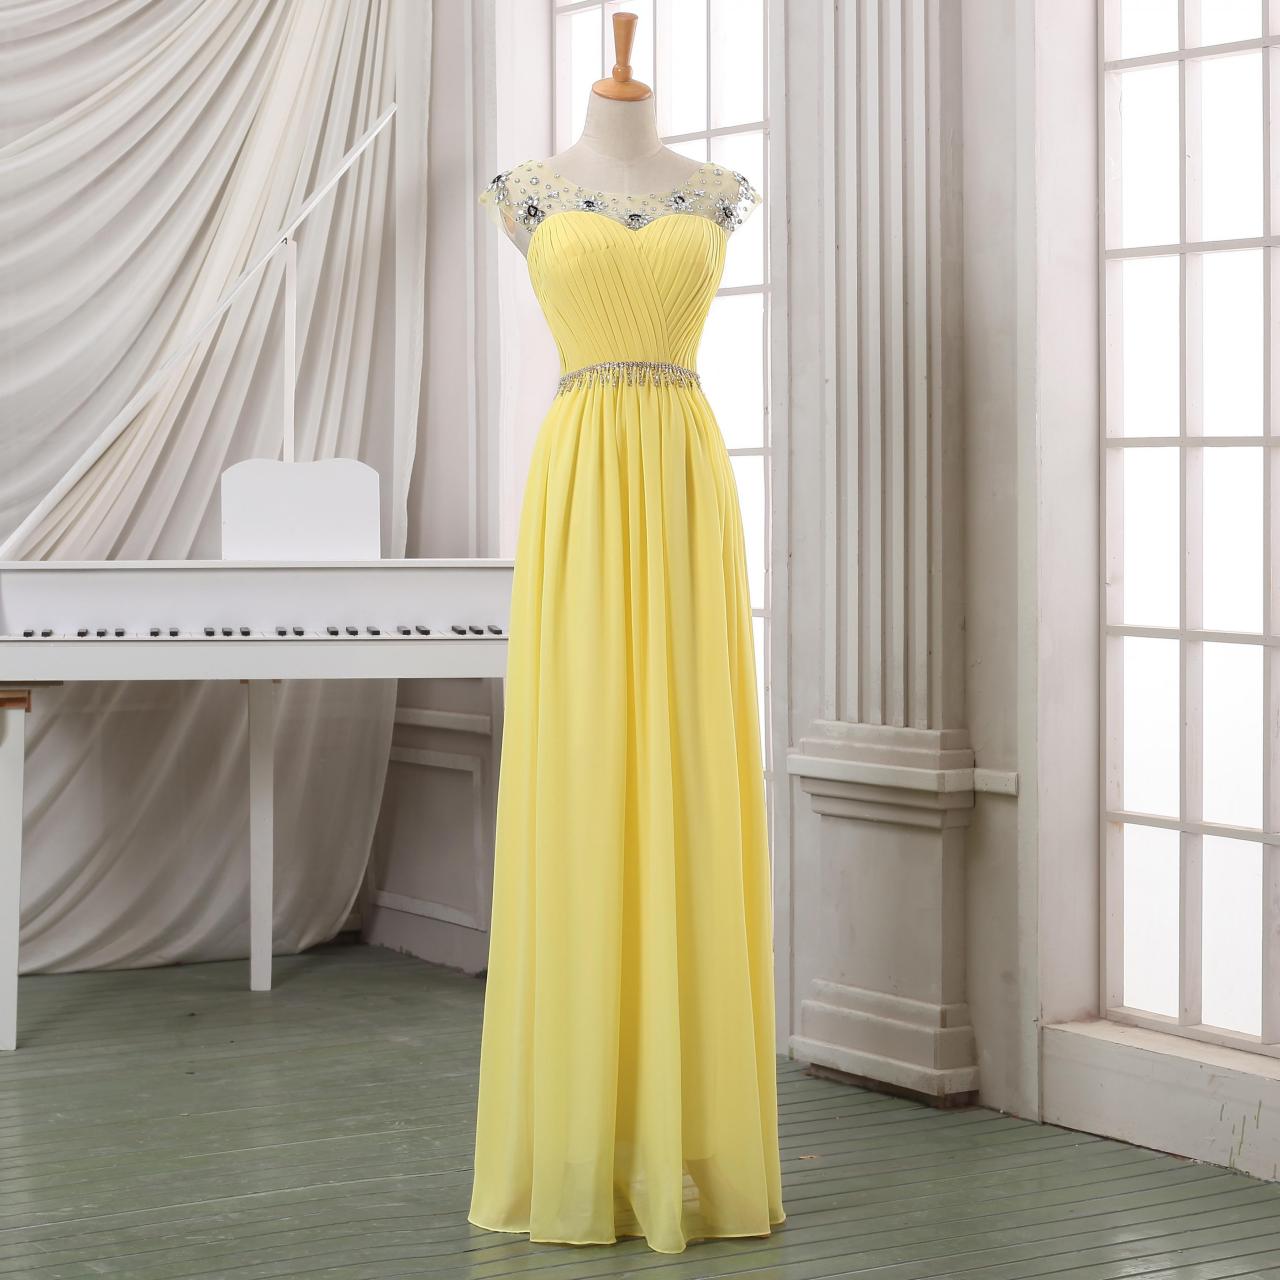 Prom Dress,long Chiffon Prom Dress,yellow Prom Dress,long Yellow Homecoming Dress,yellow Prom Dress/party Dress/evening Dress/party Dress In